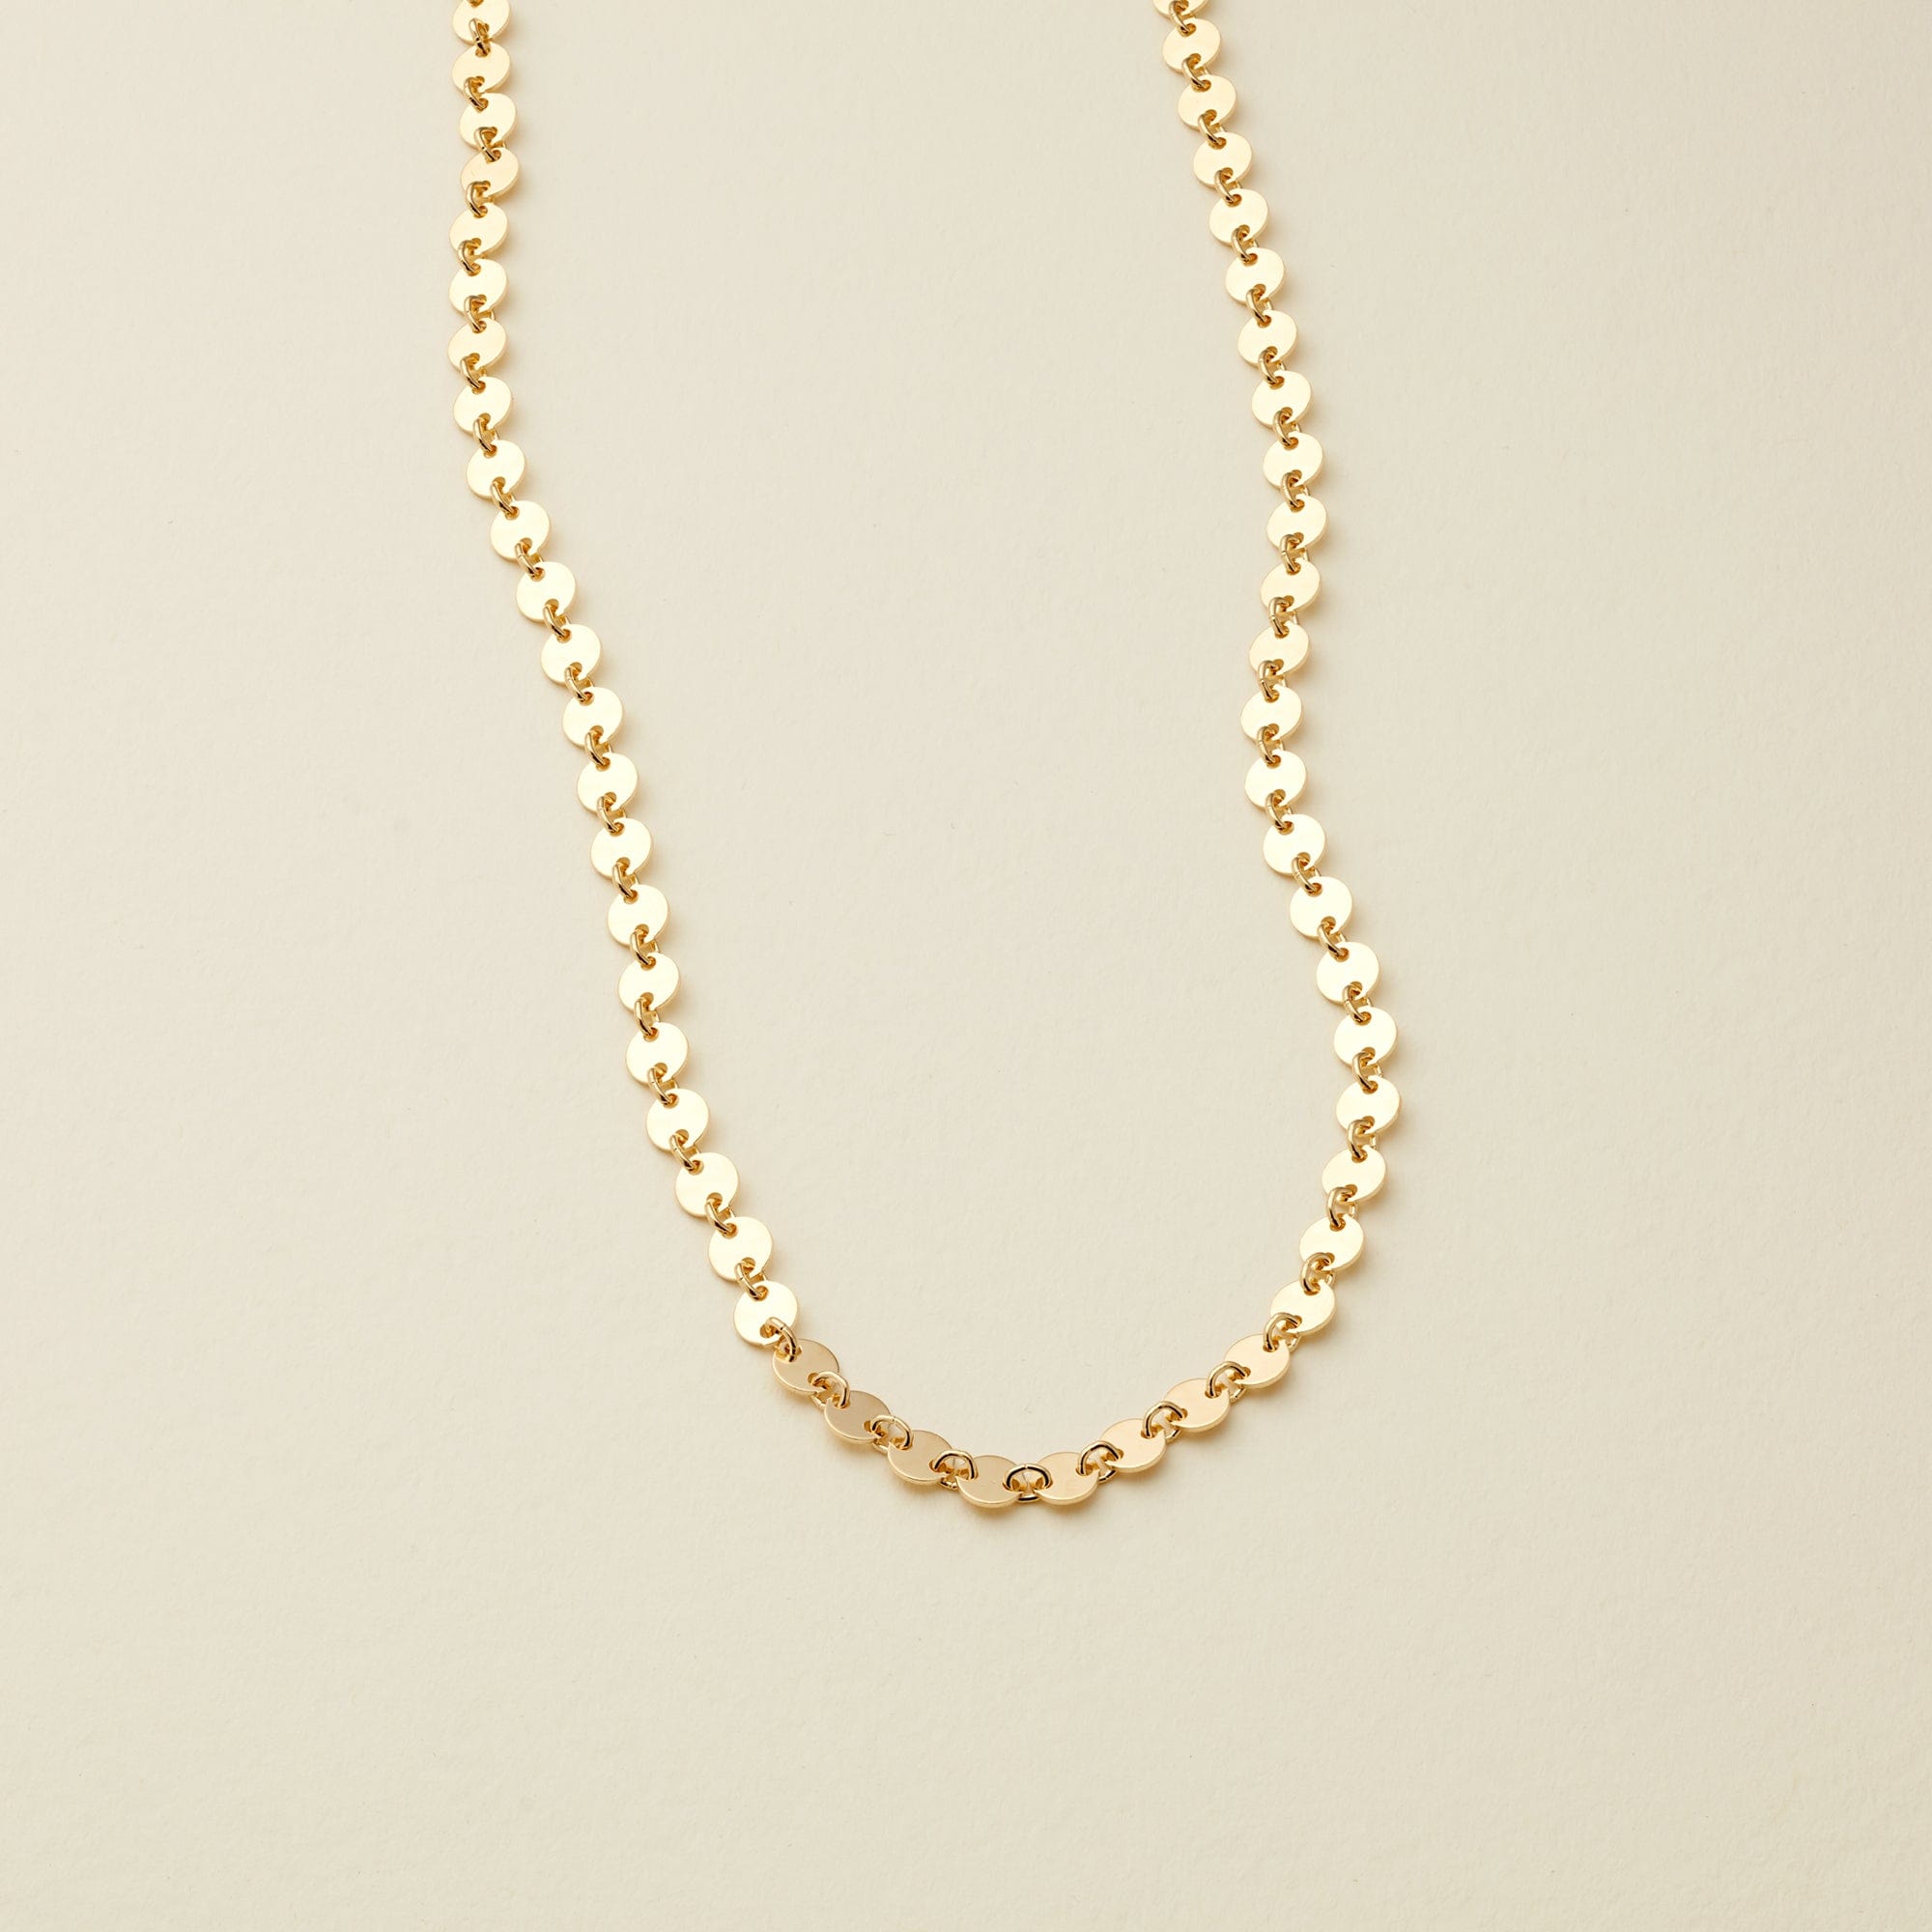 Poppy Choker Necklace Gold Filled / 13"-14" Necklace